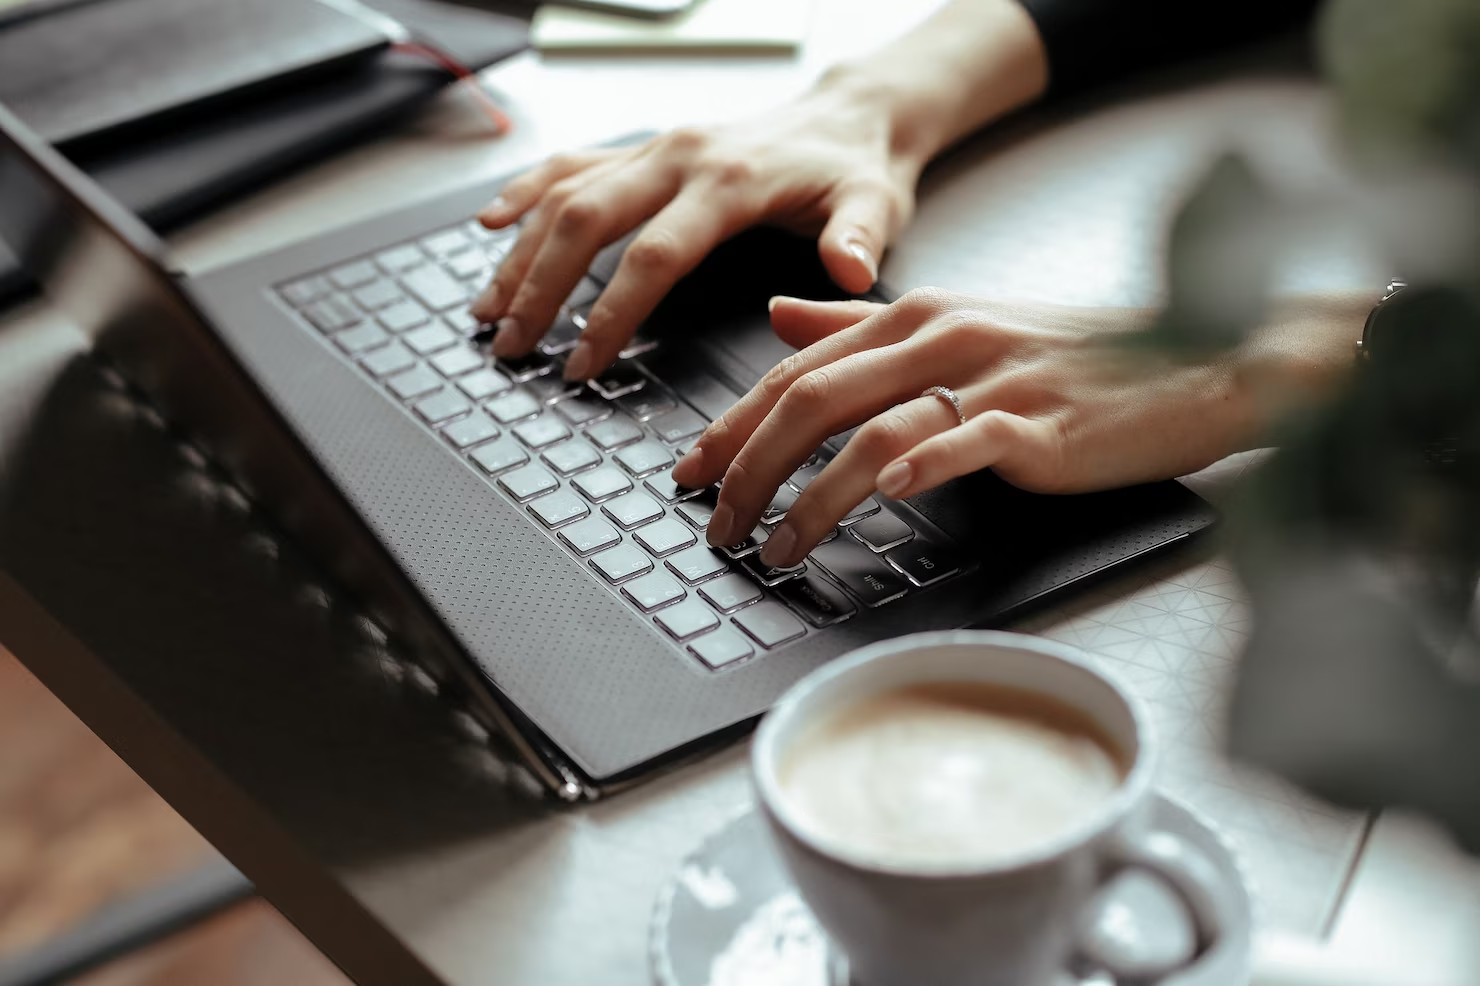 mãos femininas digitam em um notebook preto, acompanhado por um café ao lado em uma xícaras e pires da cor branca
